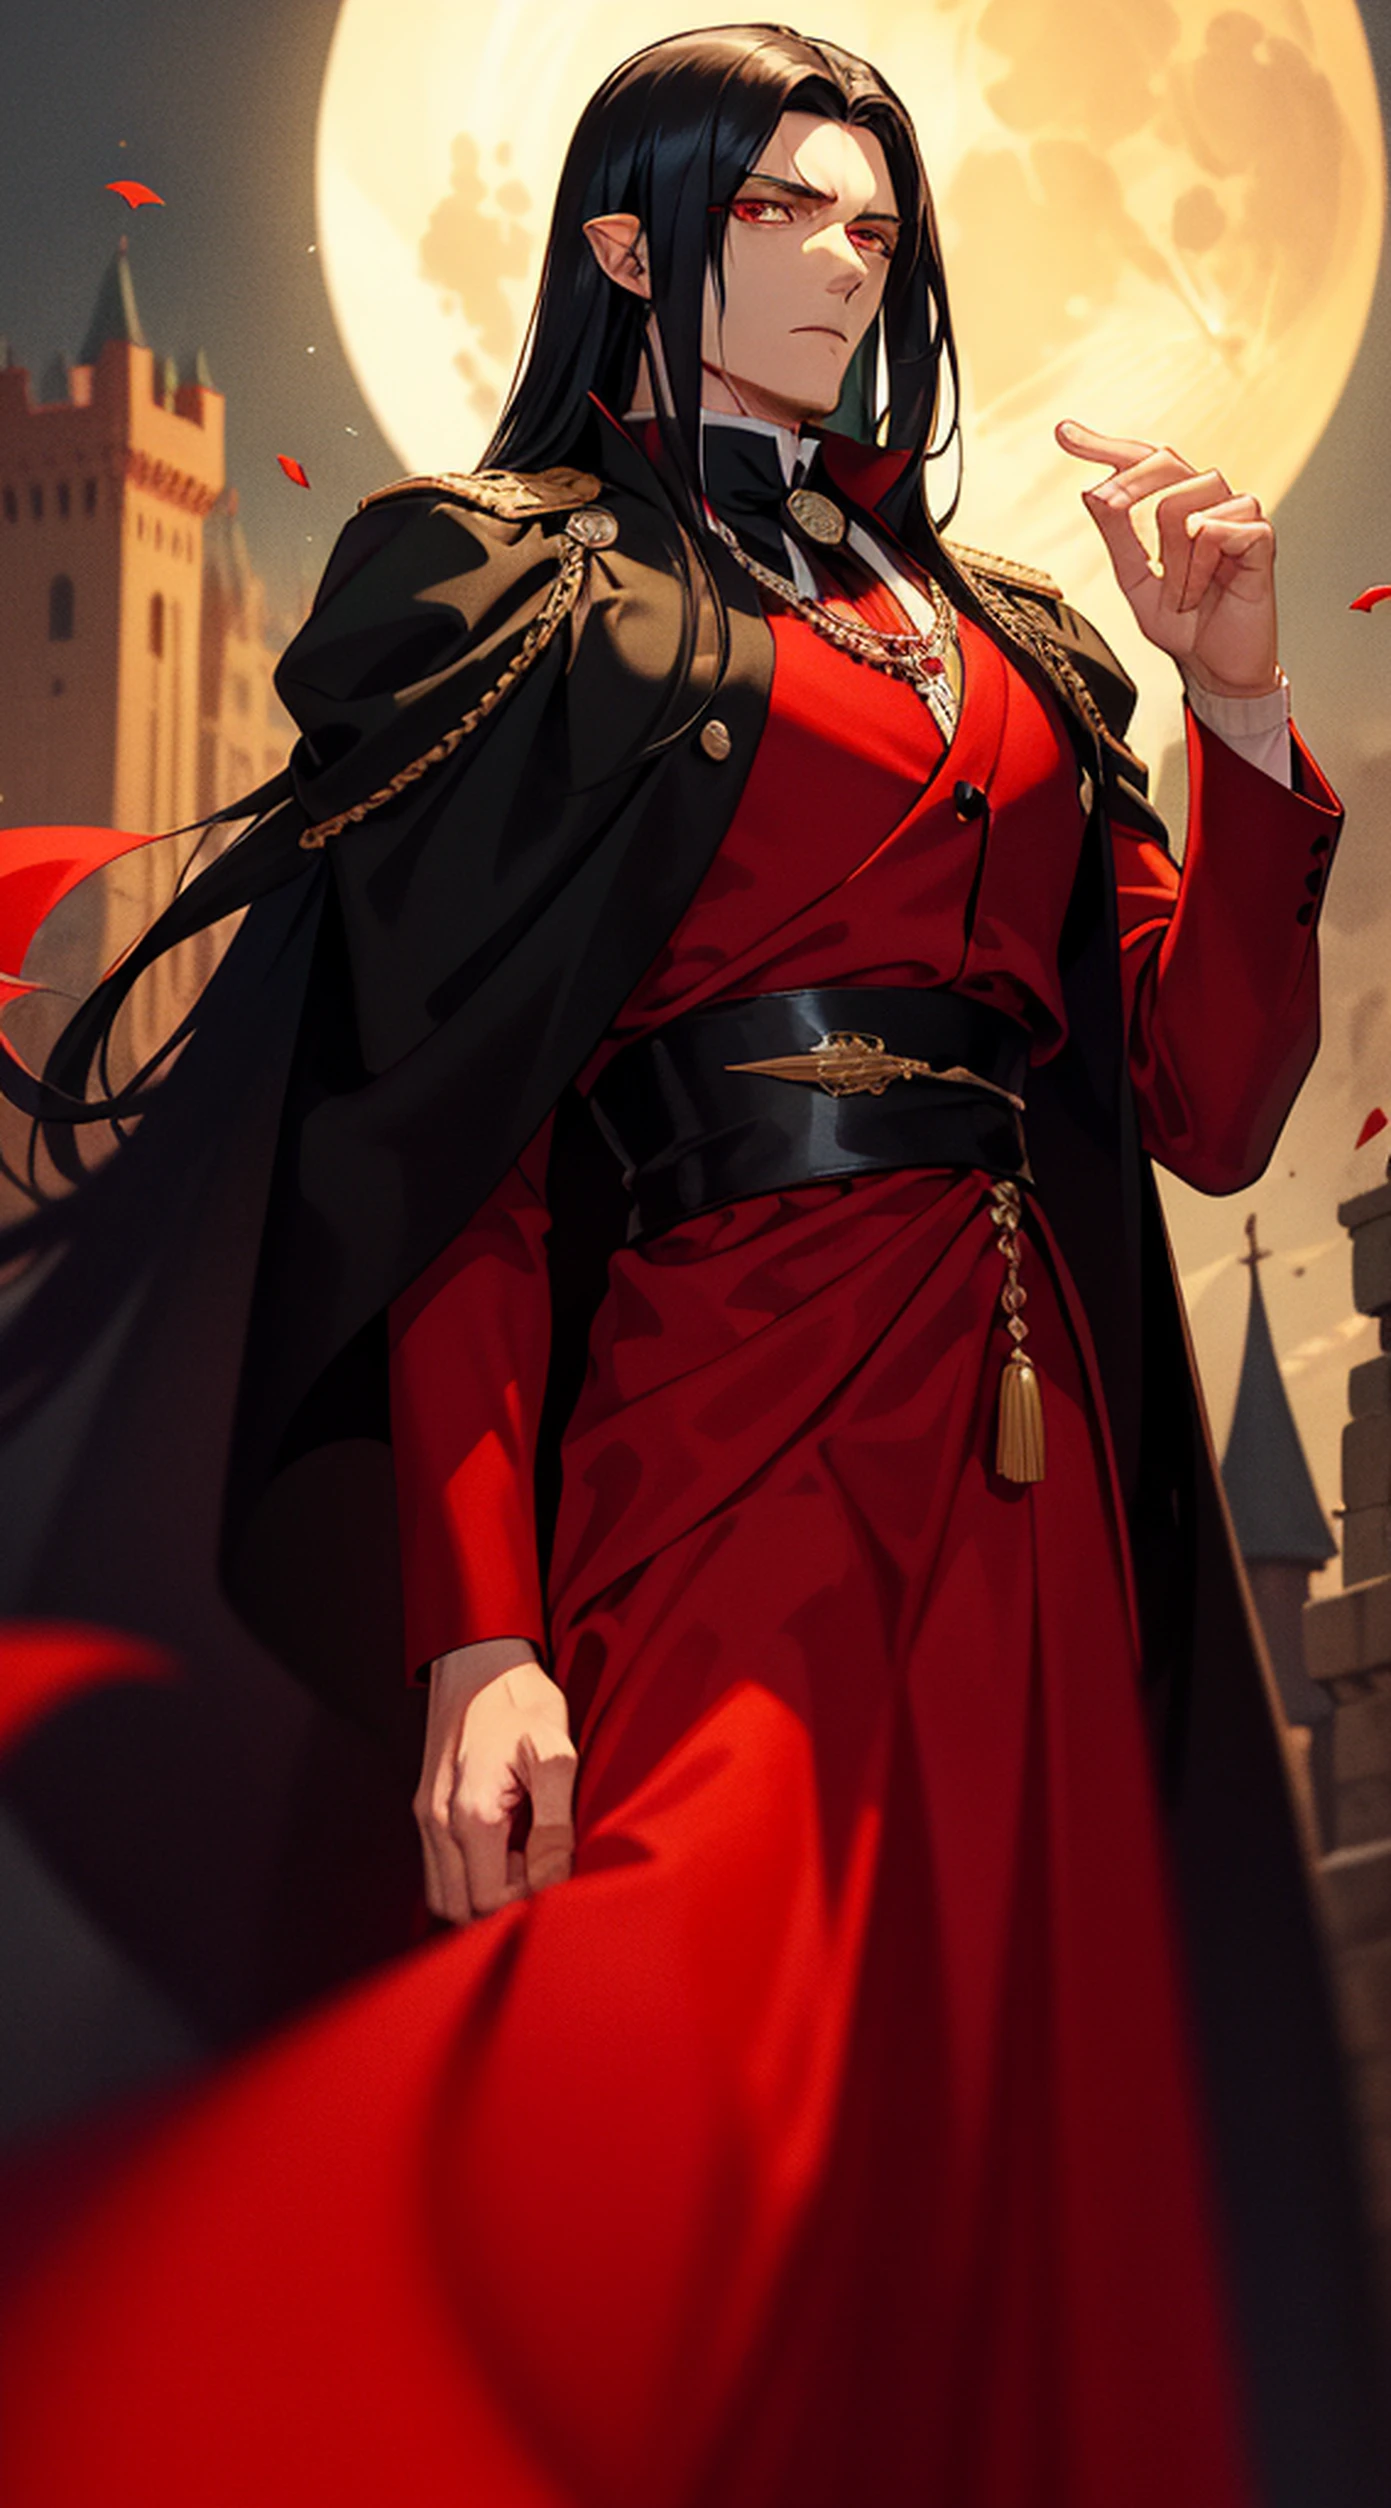 ハンサムな男, 長い黒髪と赤い目をした吸血鬼の王, 彼は茶色のローブと赤の黒い服を着ています. (セナリウス王宮の血まみれの月の夜)